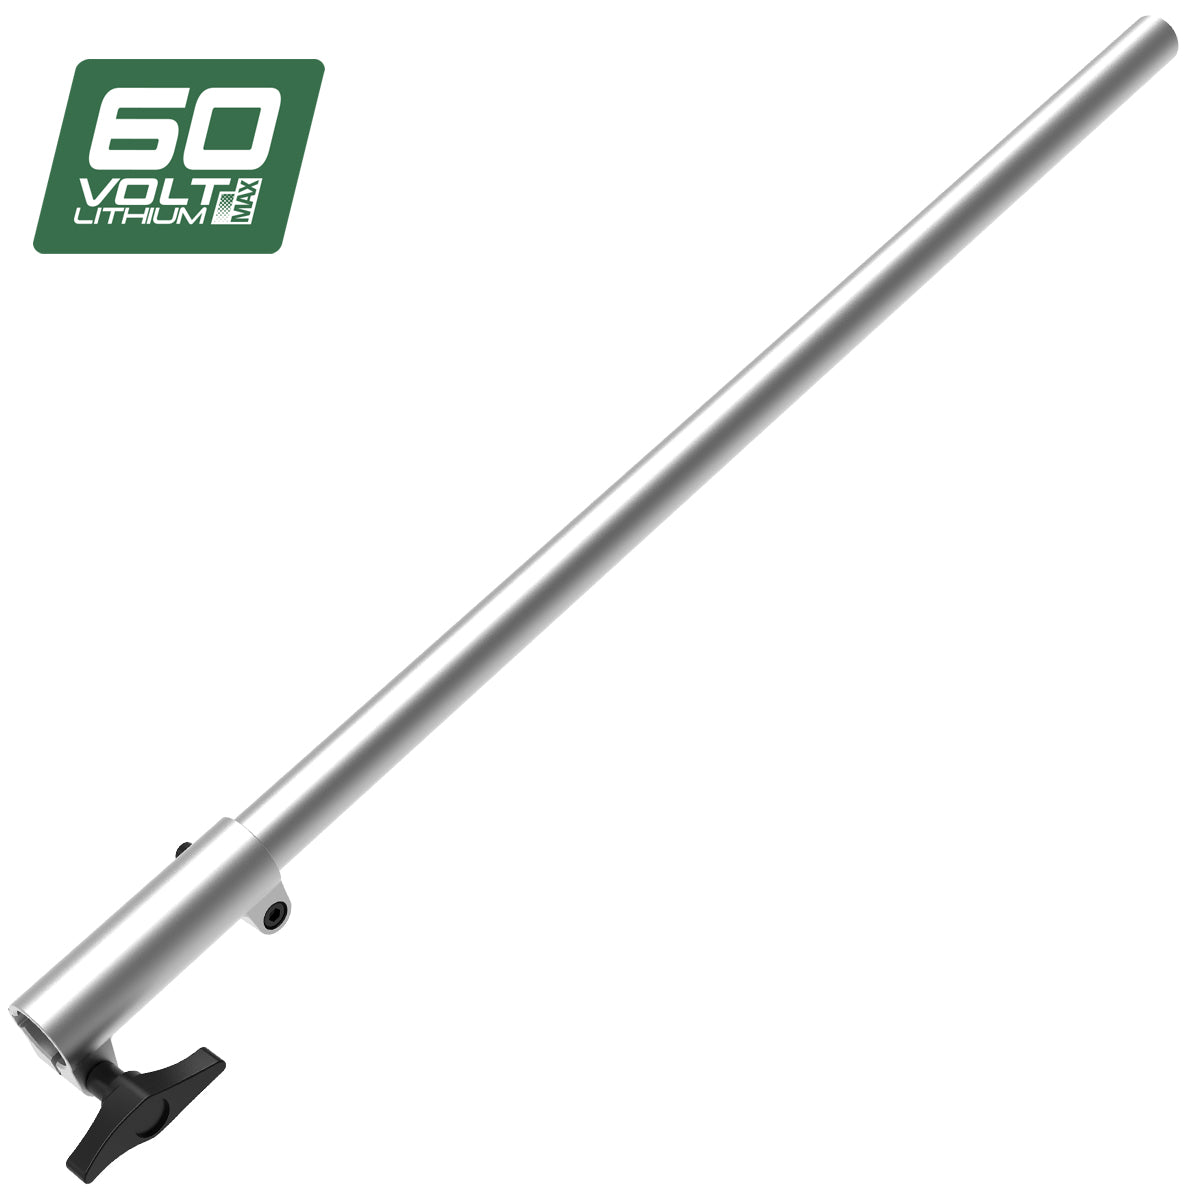 60V Pro Extension Pole Attachment